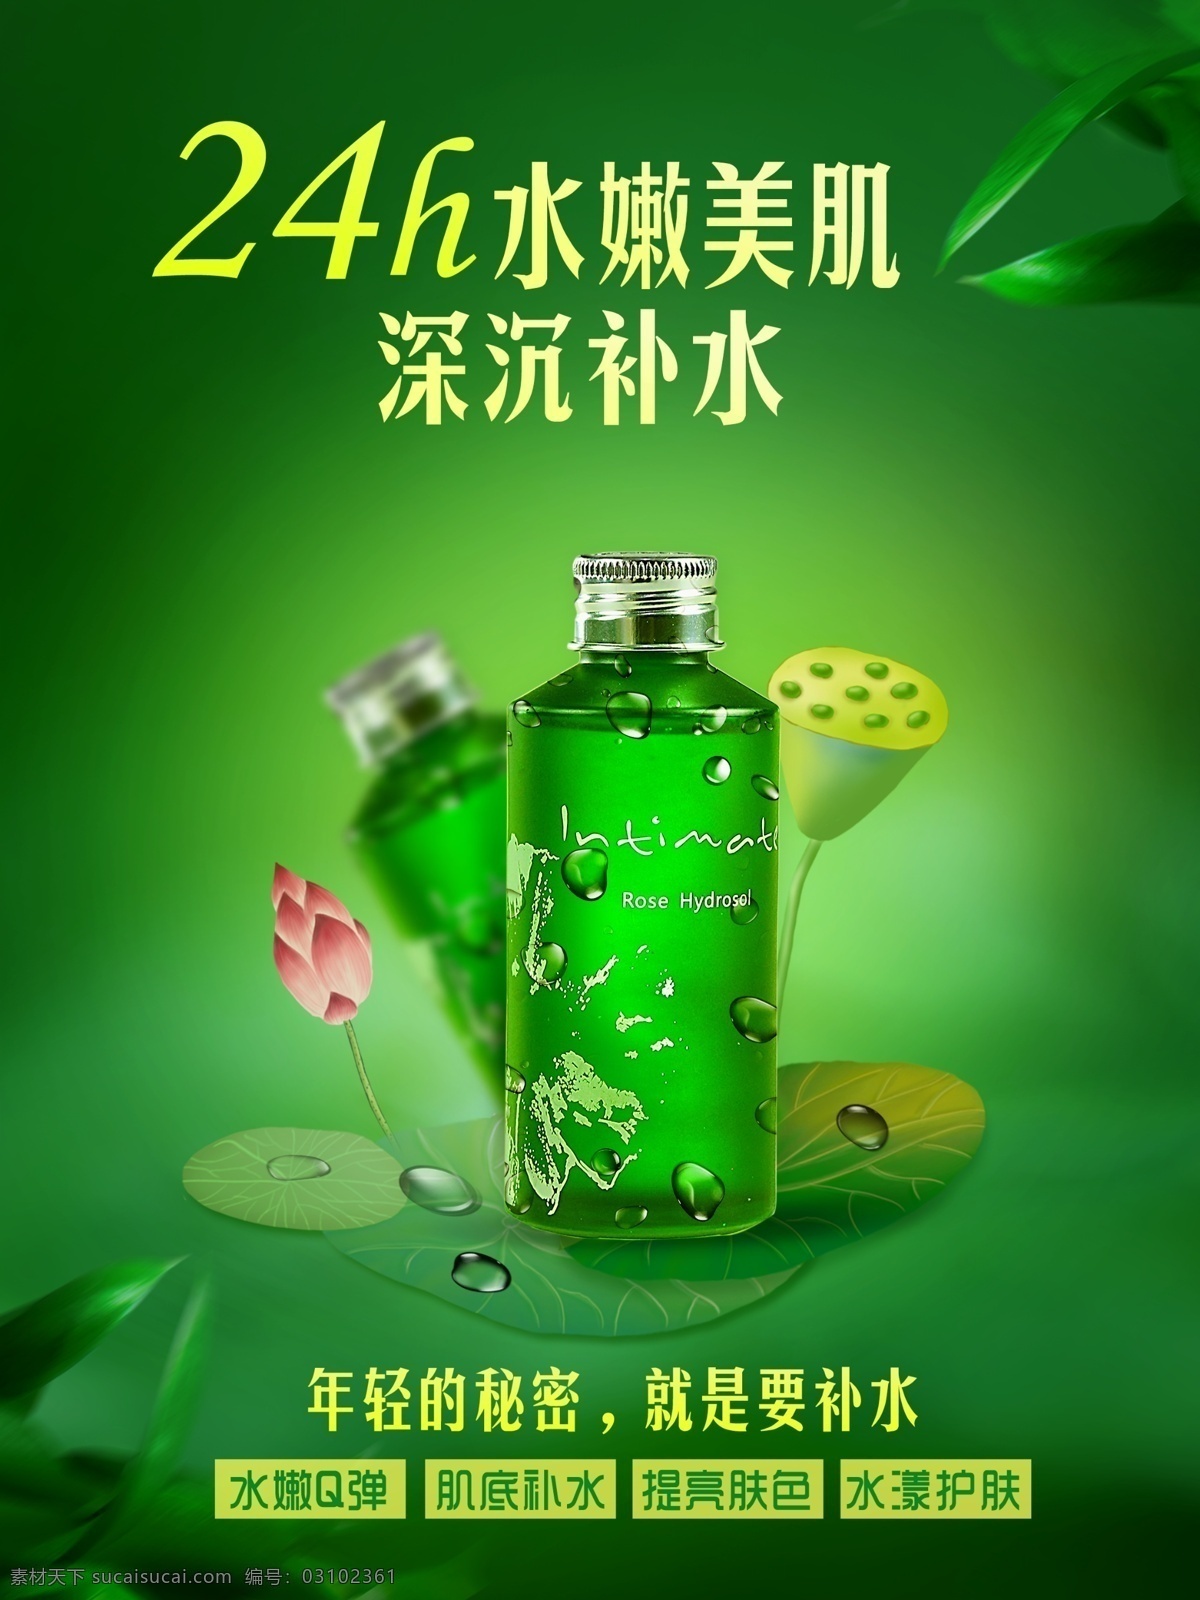 清新 绿色 化妆品 海报 化妆品海报 清晰绿色背景 荷花 莲藕